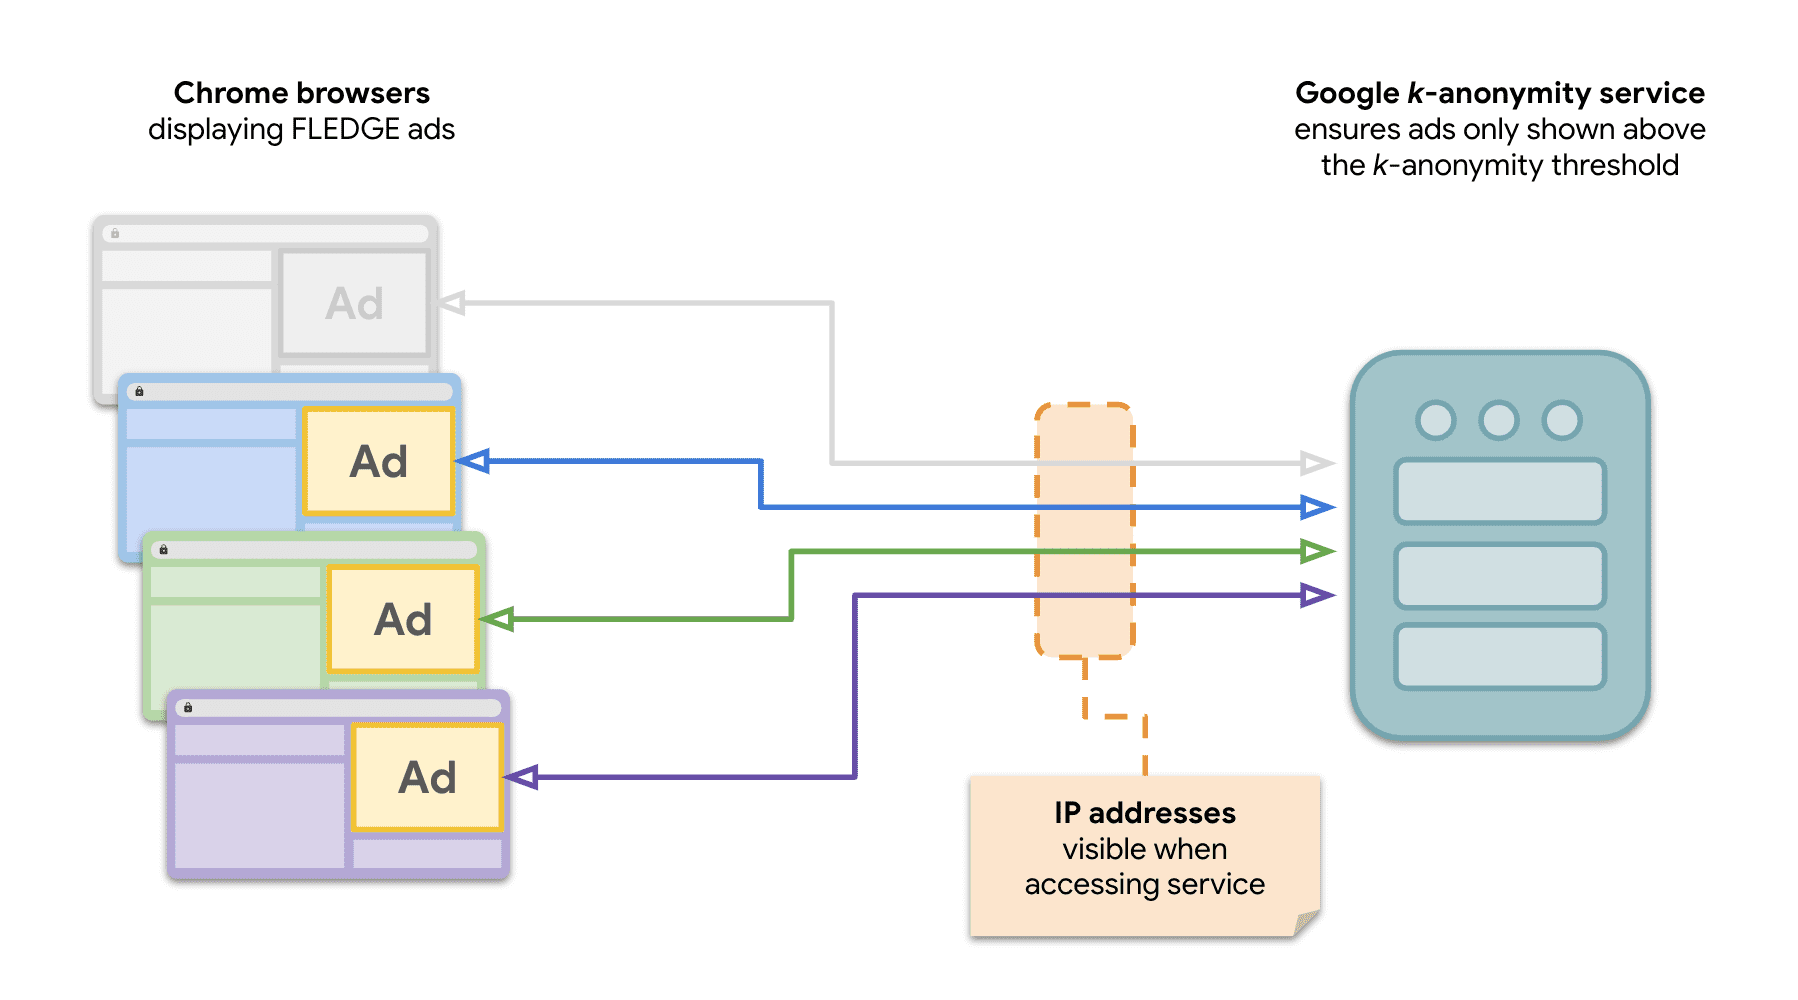 Ein Diagramm, das zeigt, dass mehrere Websites in Chrome Anfragen an den k-Anonymitätsserver senden, um FLEDGE-Anzeigen auszuliefern.